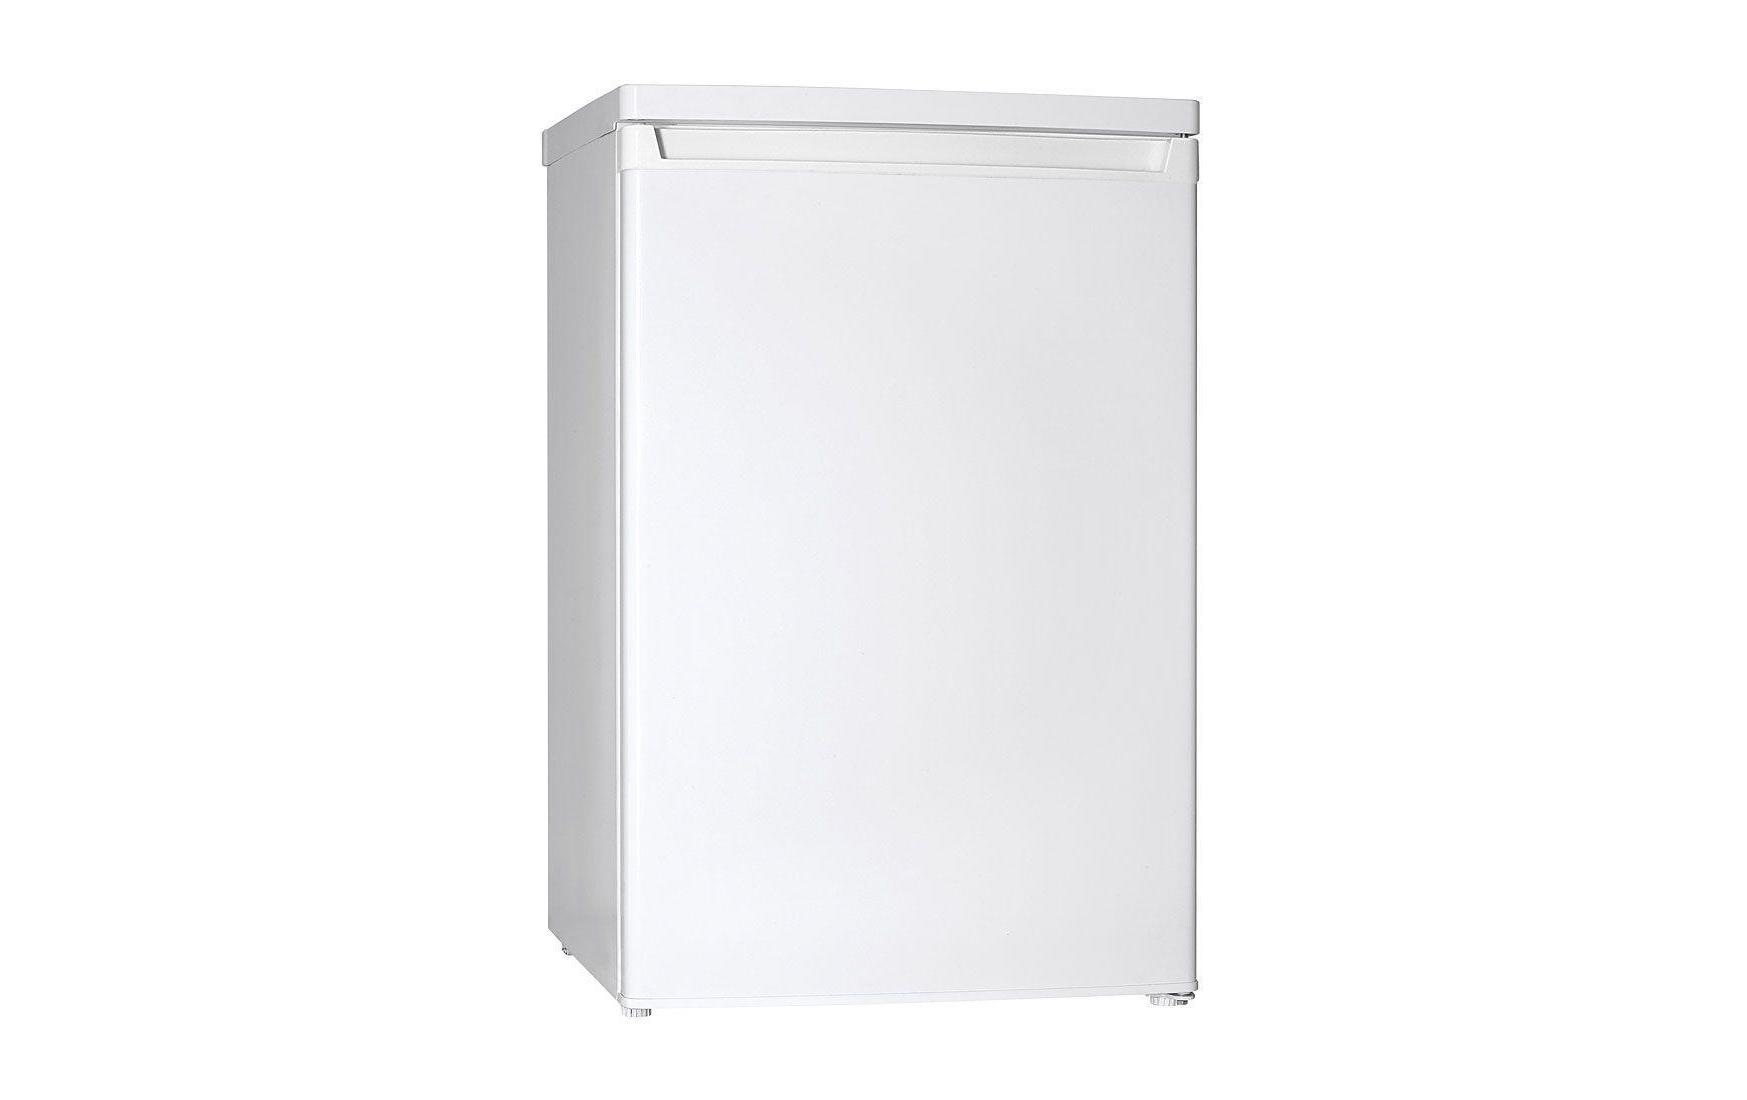 Kibernetik Kühlschrank, KS130L02, 85,5 cm hoch, 55 cm breit